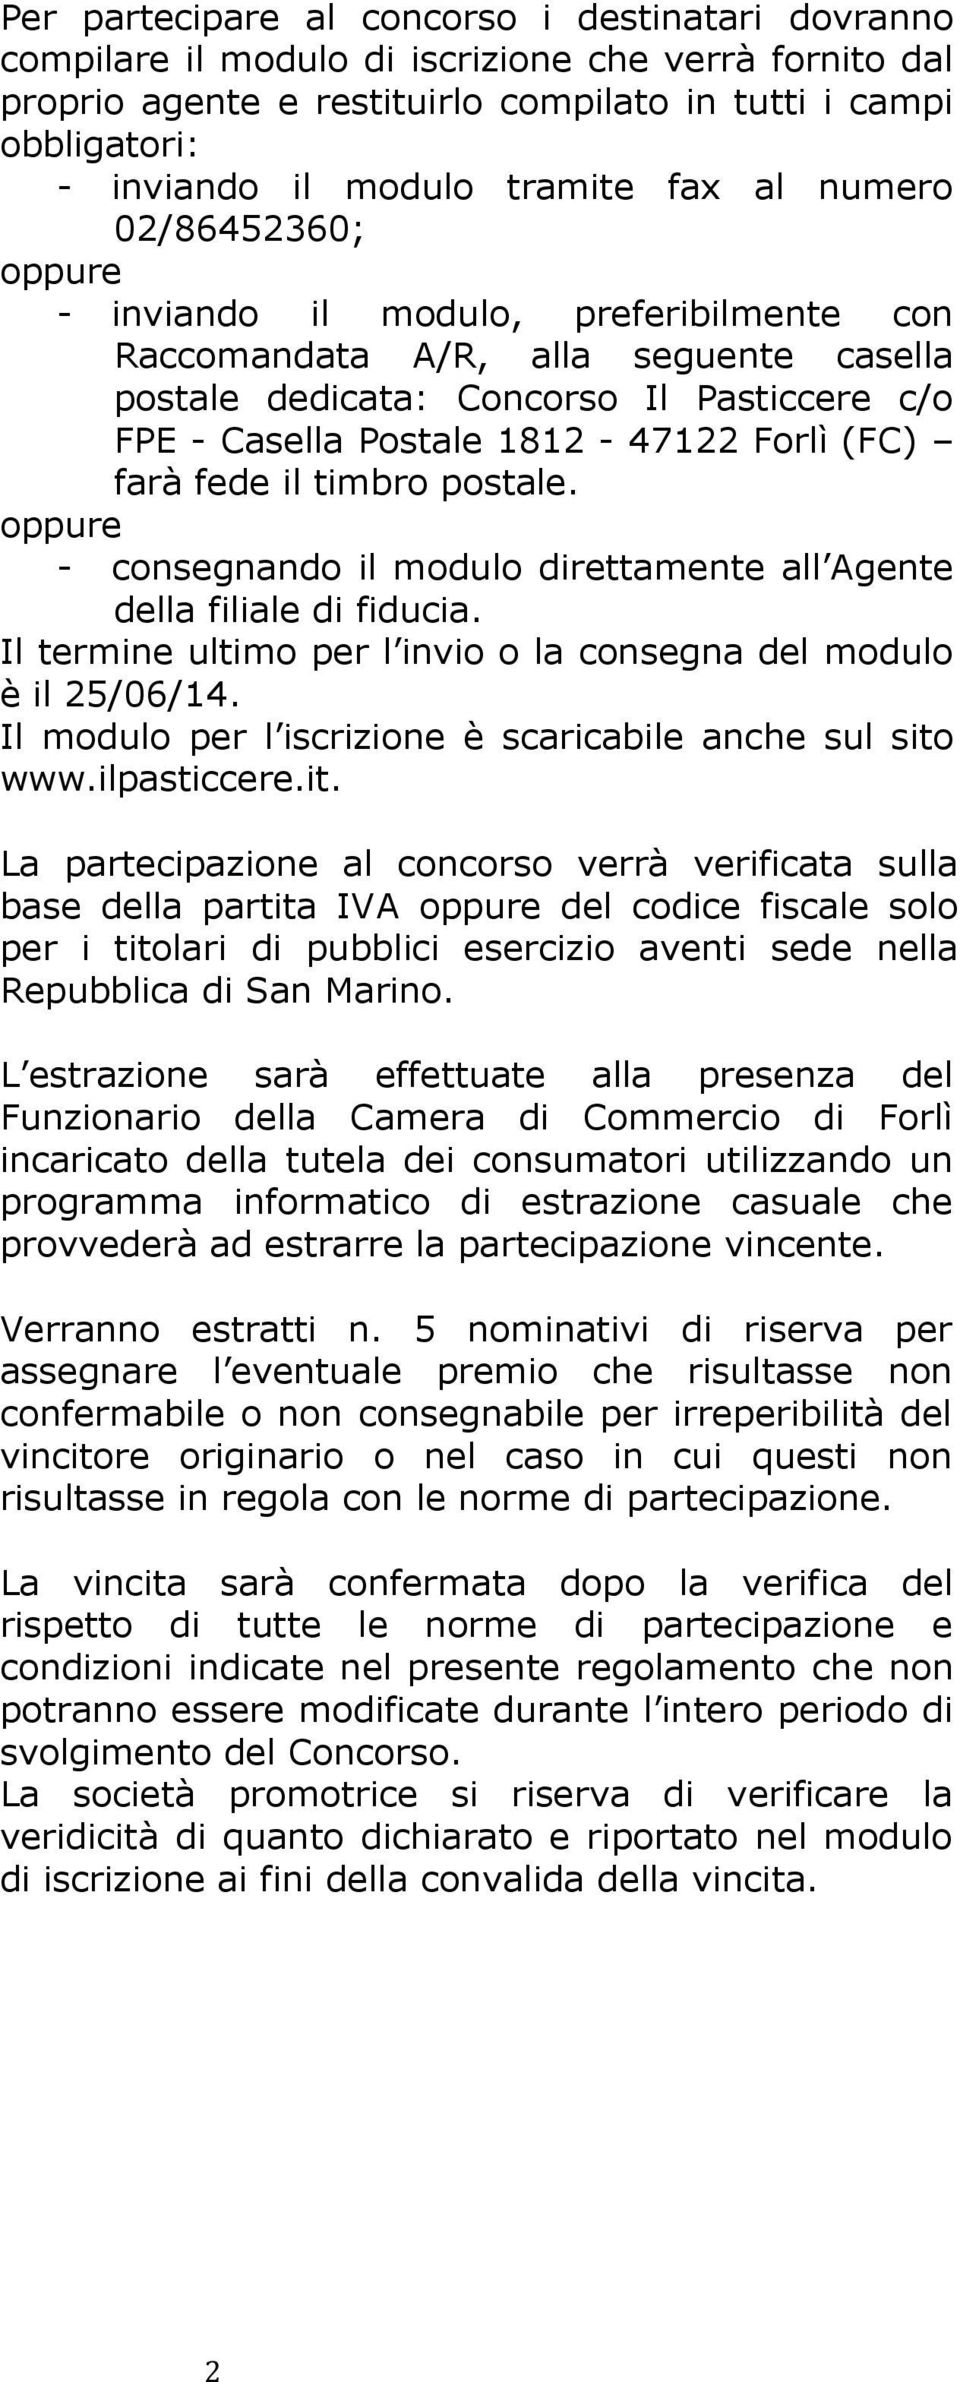 1812-47122 Forlì (FC) farà fede il timbro postale. oppure - consegnando il modulo direttamente all Agente della filiale di fiducia.